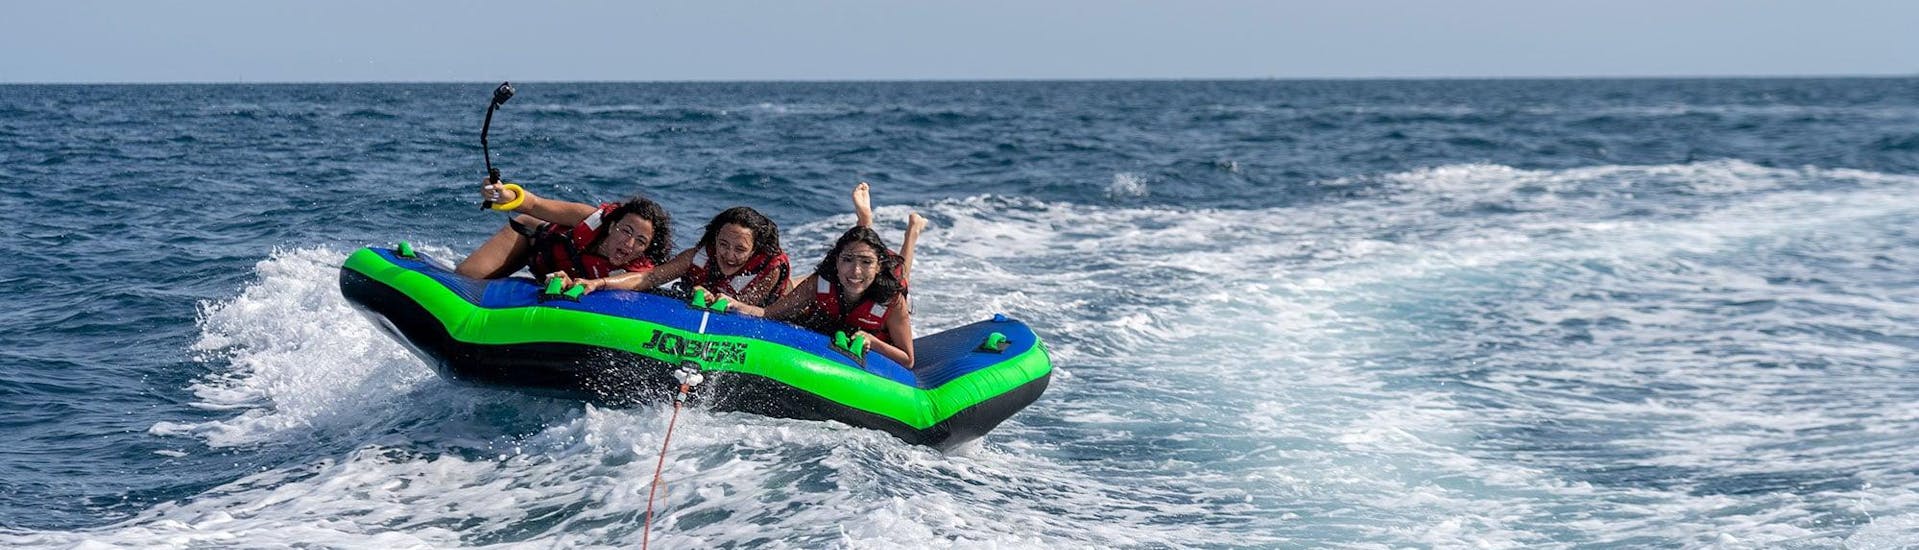 Trois femmes à bord d'un matelas gonflable Sea Riders remorqué par un bateau lors de leur activité Crazy Sofa à Barcelone.